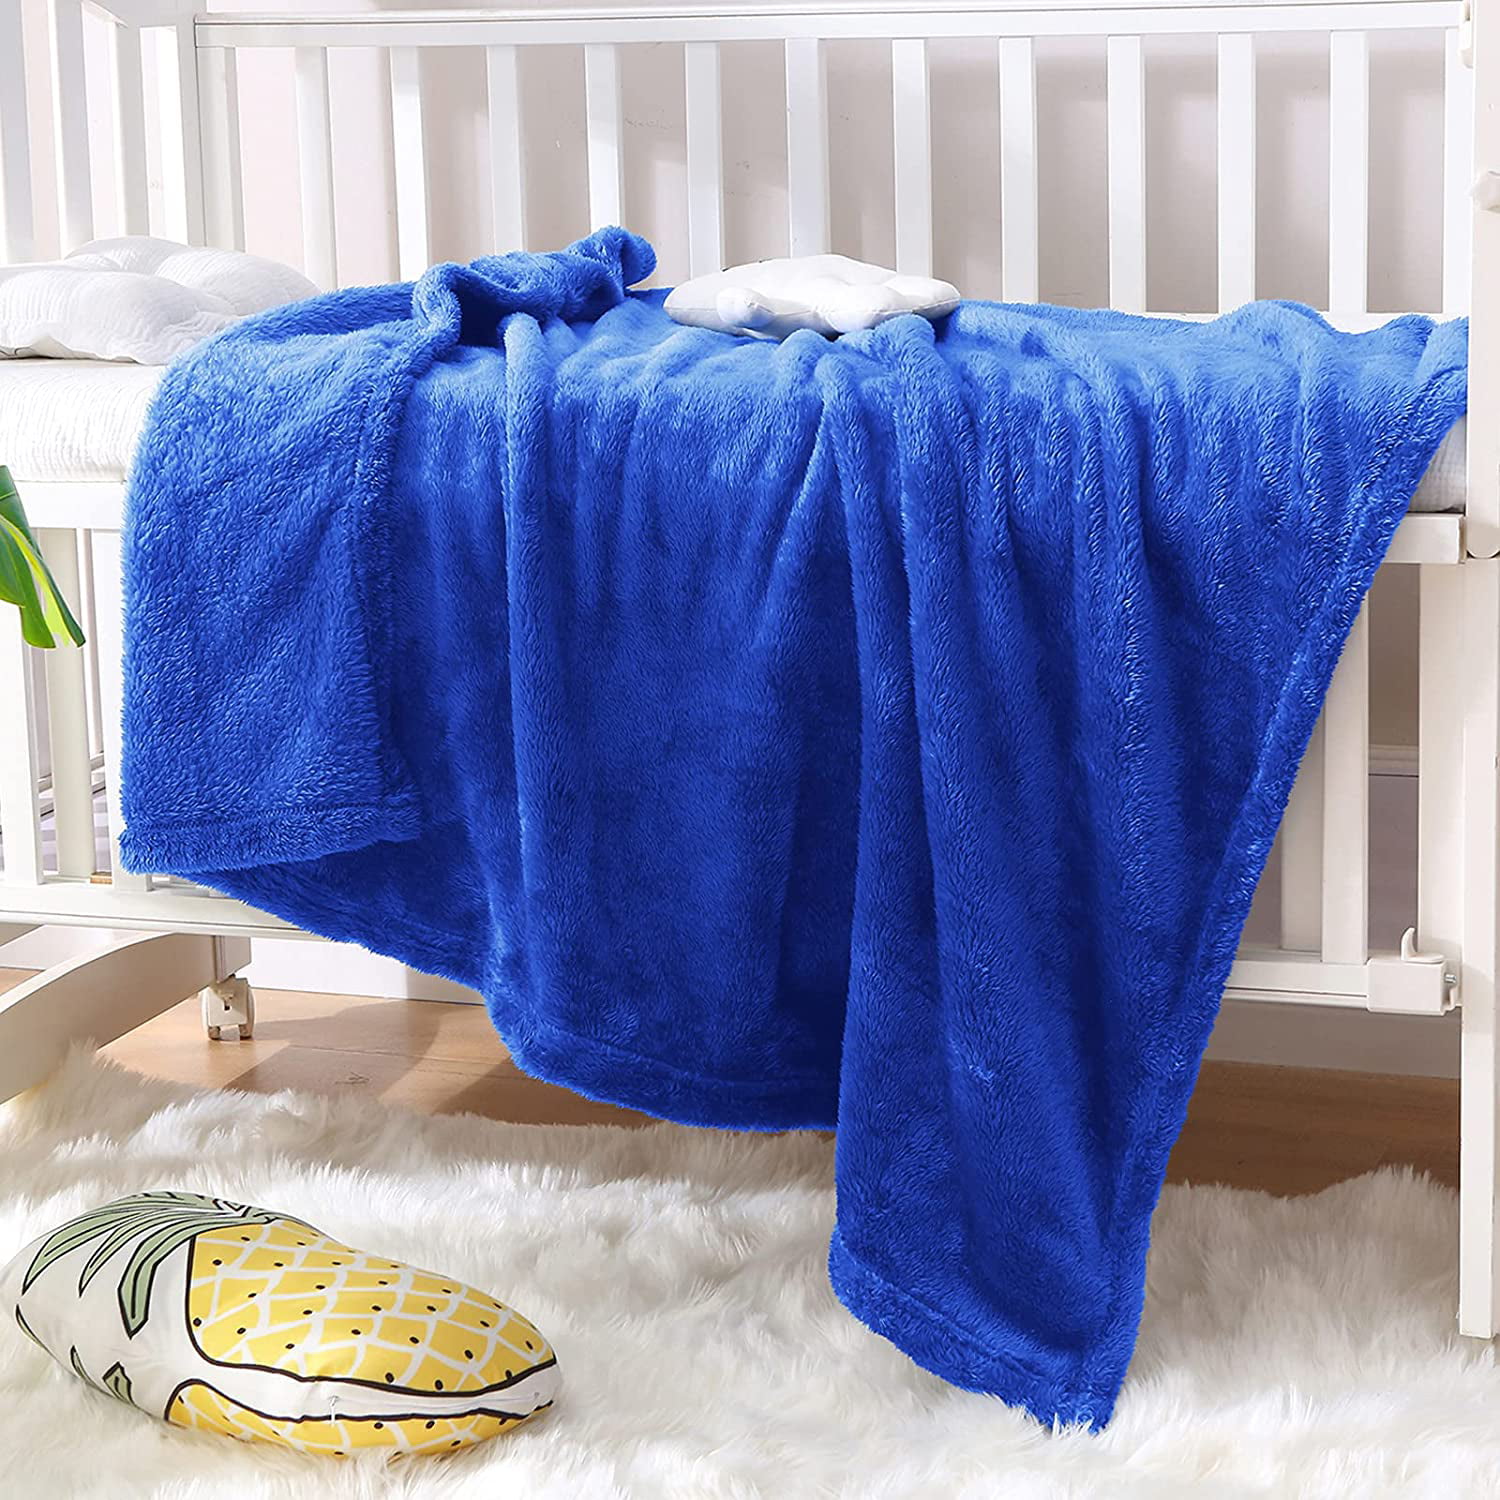 New Handmade Fluffy Quilt Soft Blanket Plaid Coverlet for Baby Newborn Children 